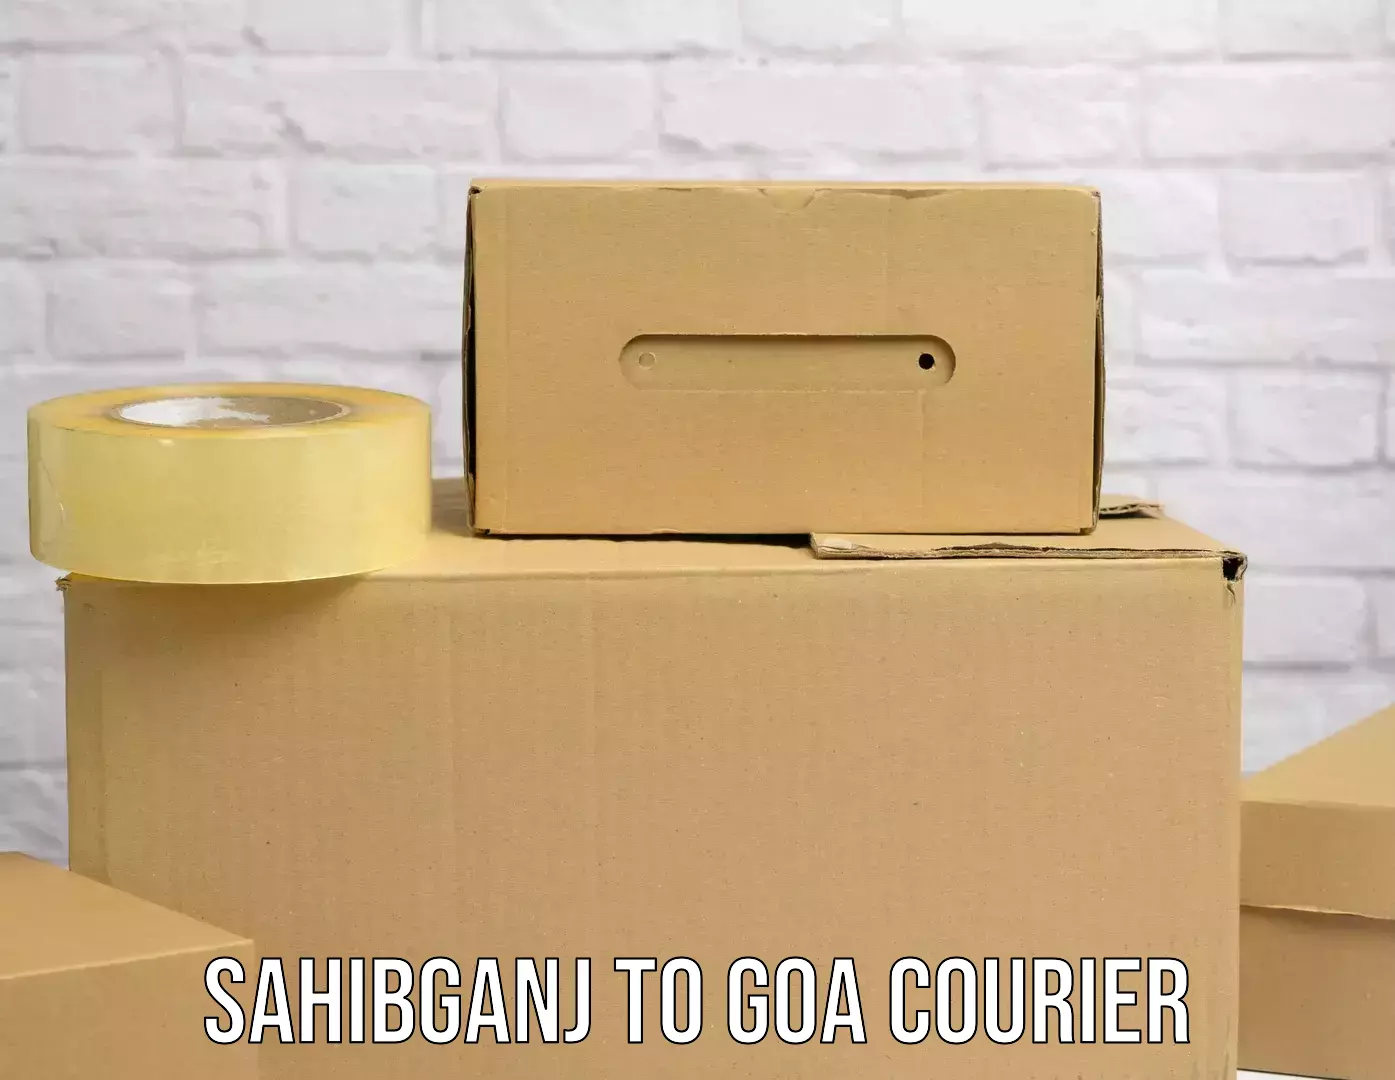 Full-service courier options Sahibganj to Bardez